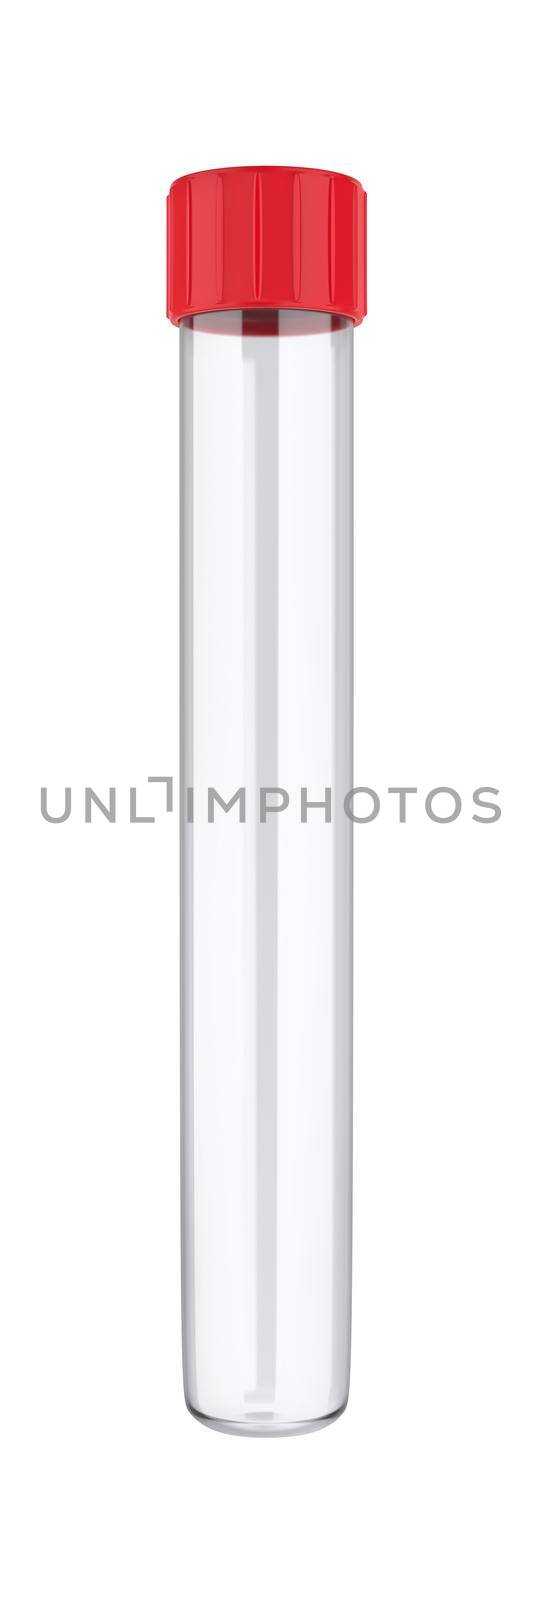 Empty test tube isolated on white background